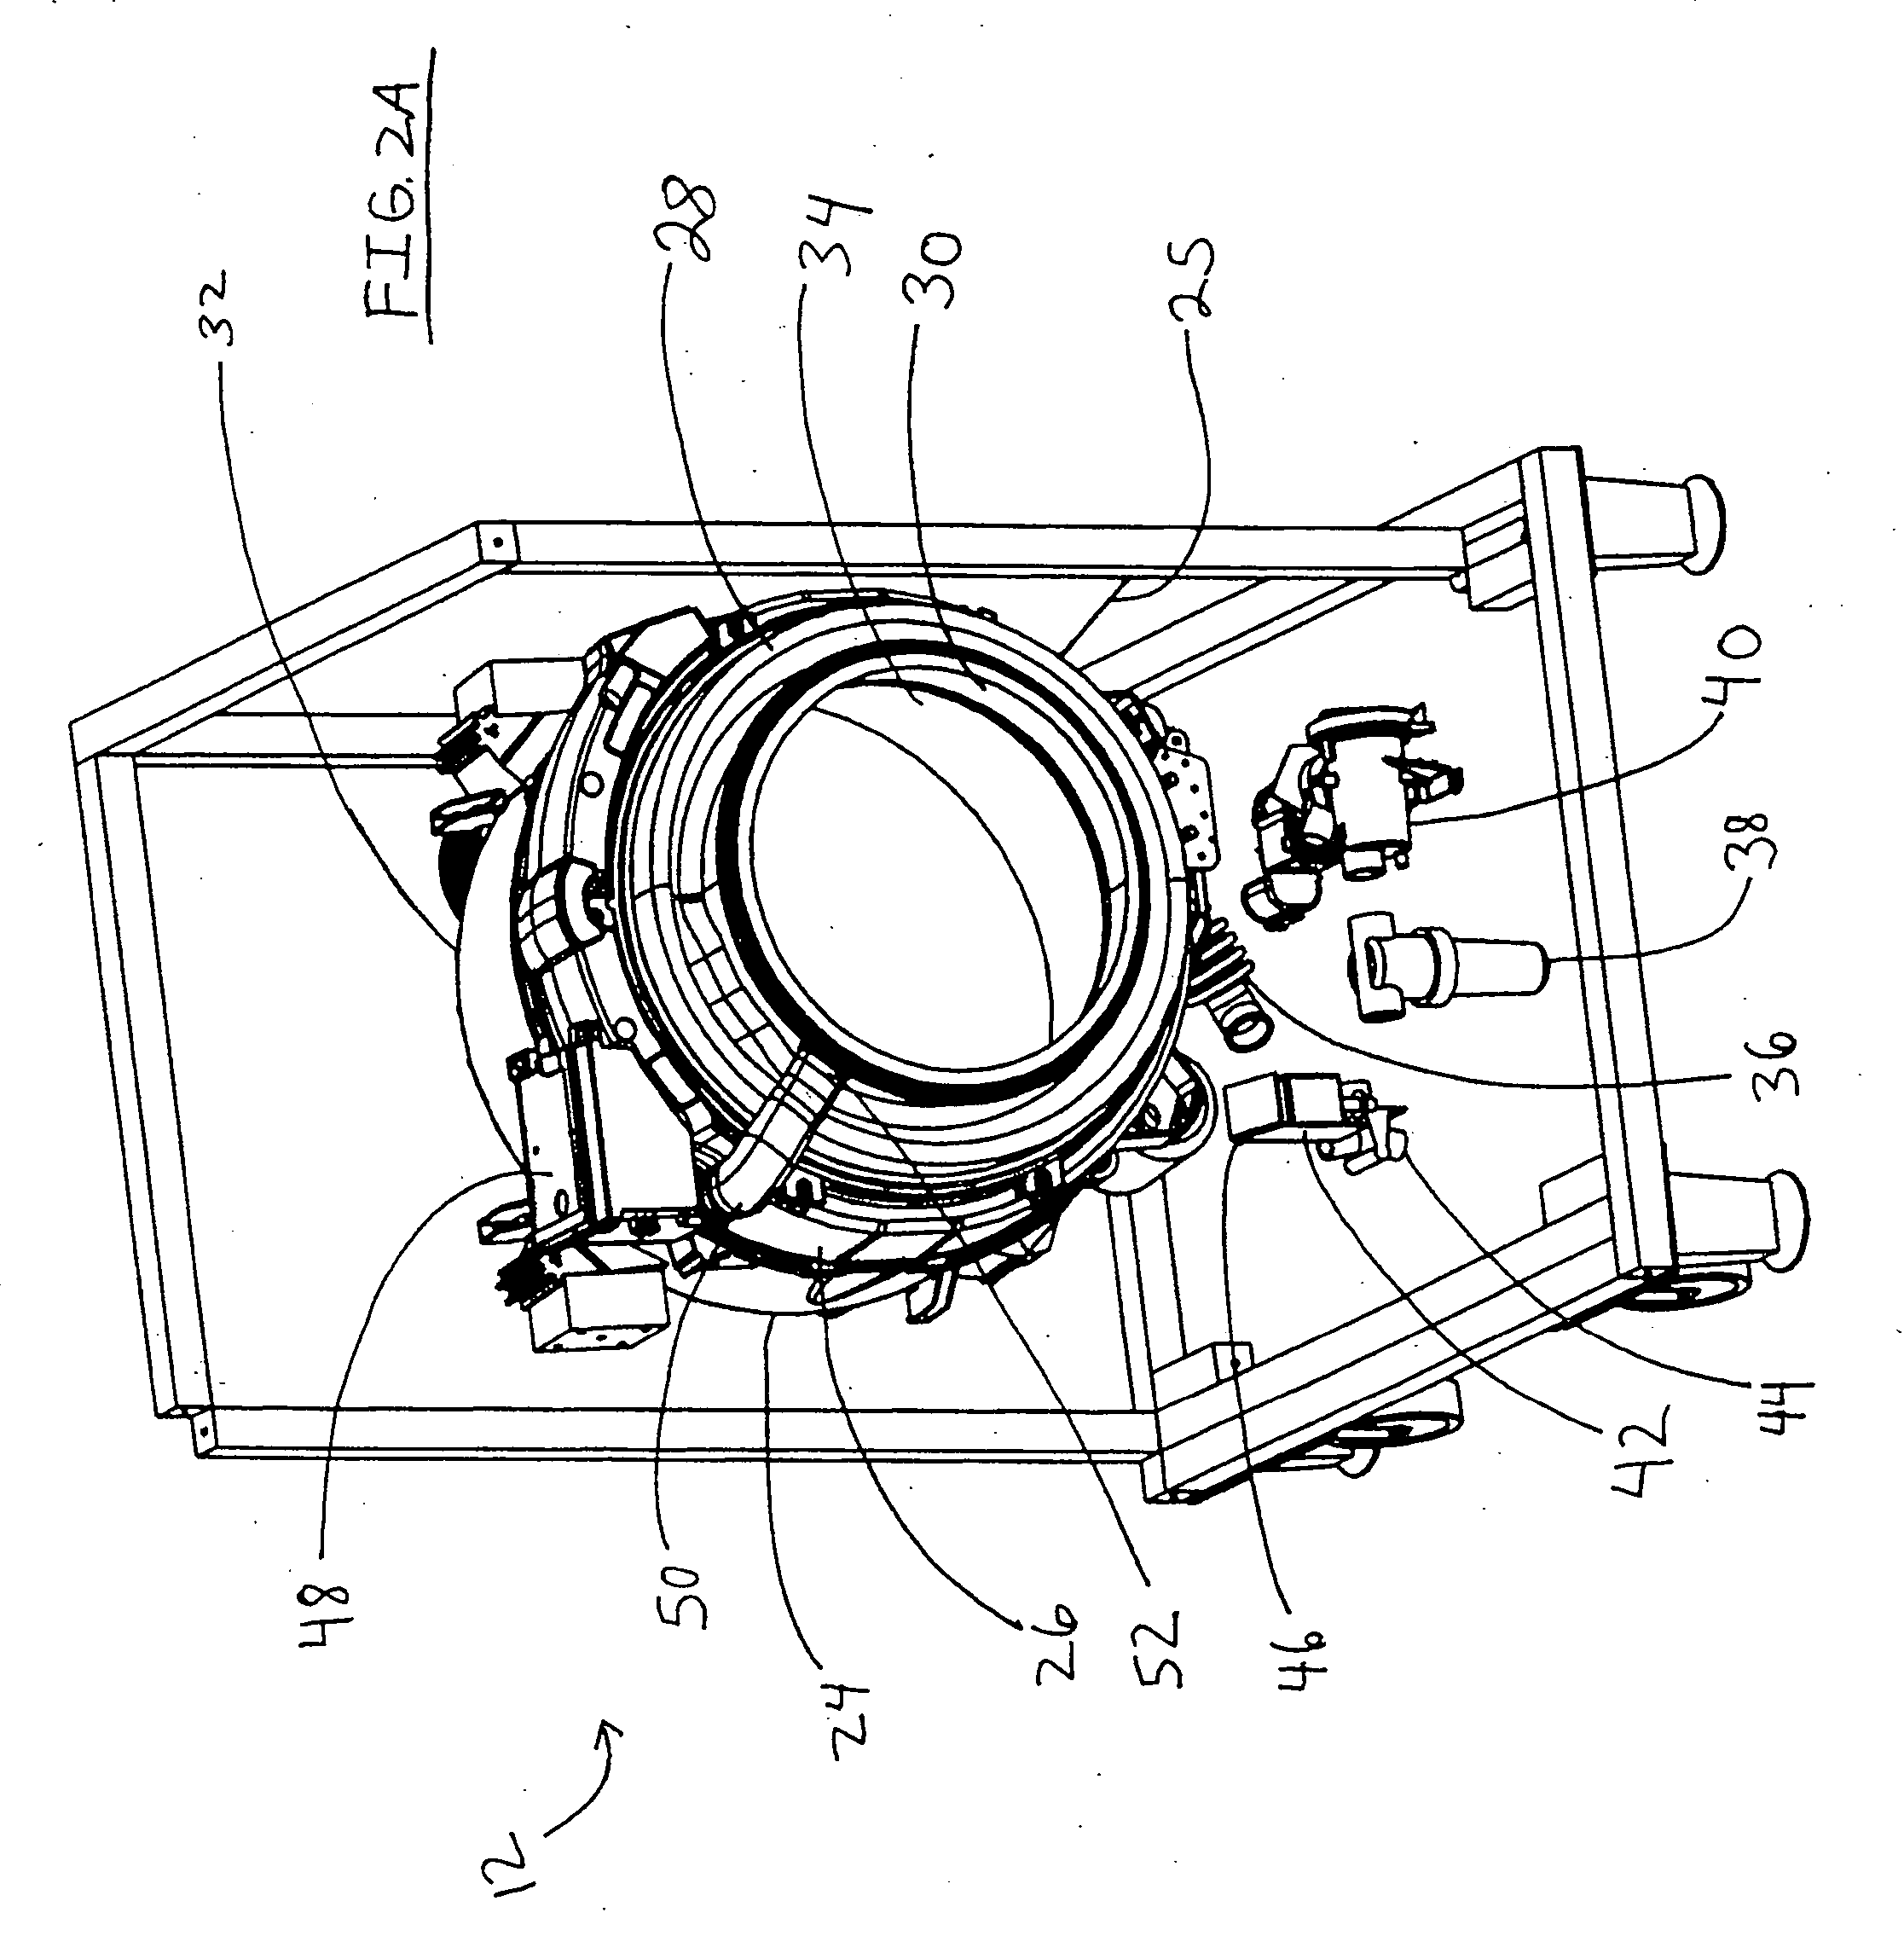 Non-aqueous washing apparatus and method